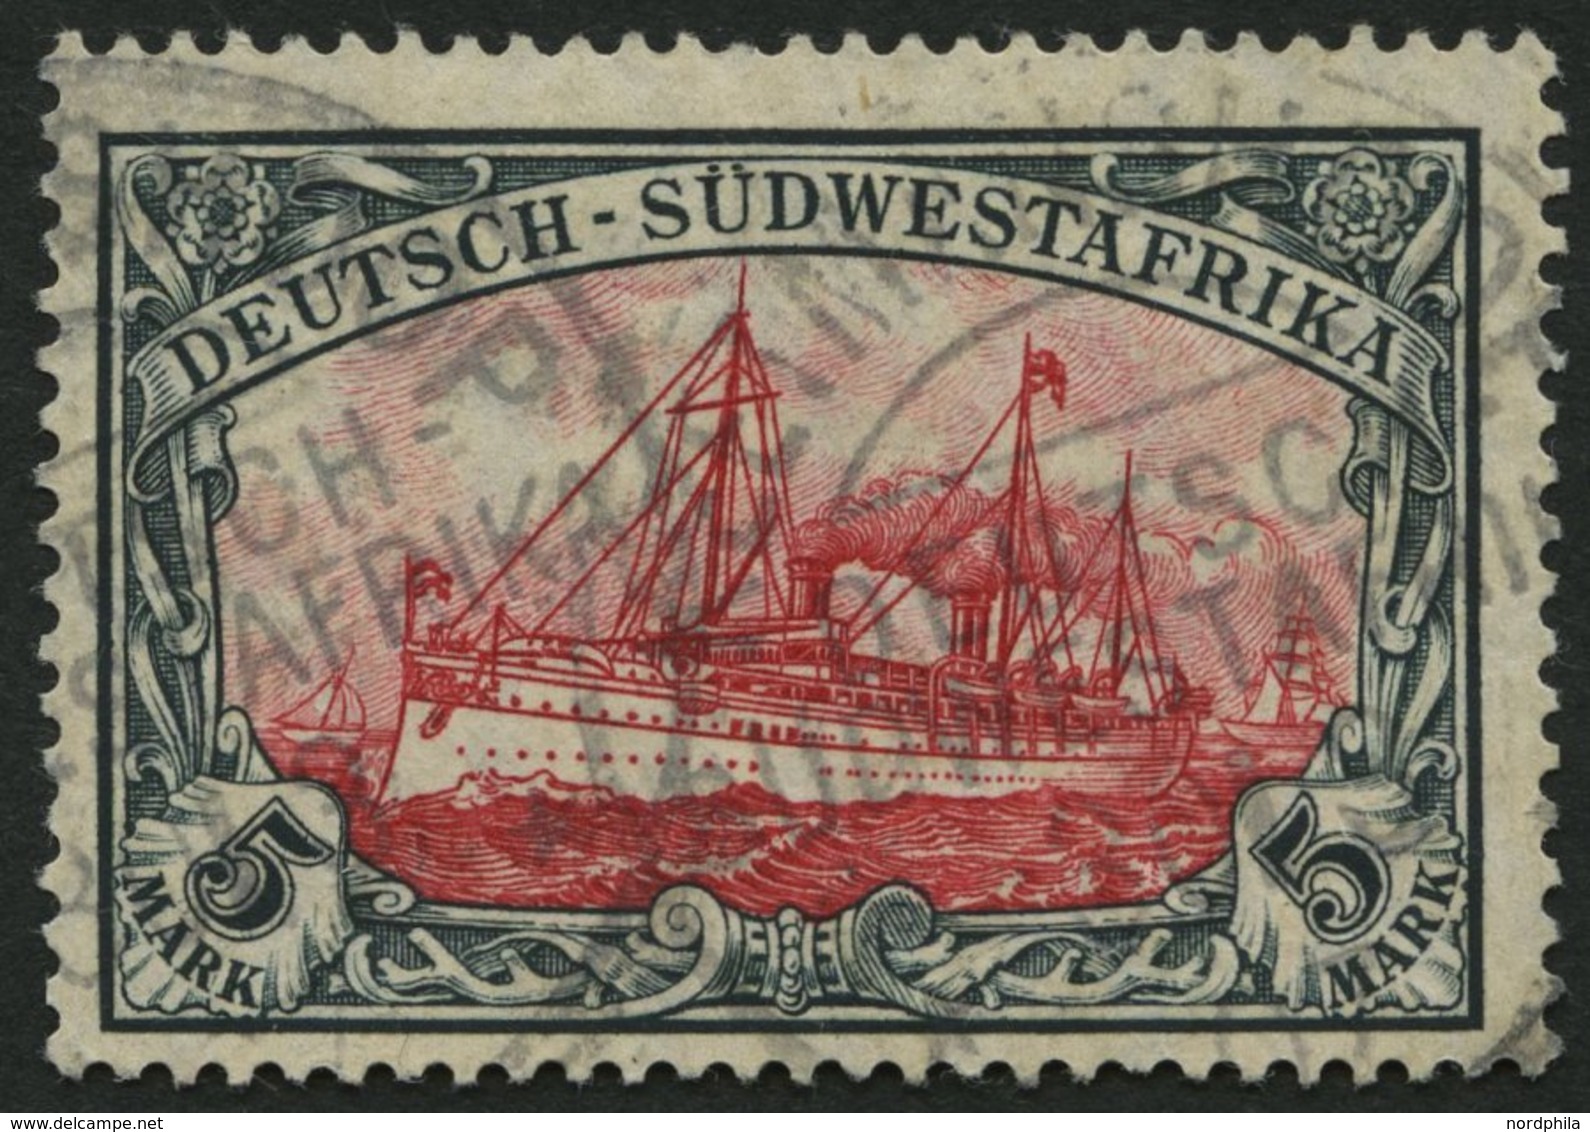 DSWA 32Aa O, 1906, 5 M. Grünschwarz/dunkelkarmin, Mit Wz., Gelblichrot Quarzend, Kleine Randkerbe Sonst Pracht, Gepr. Jä - German South West Africa